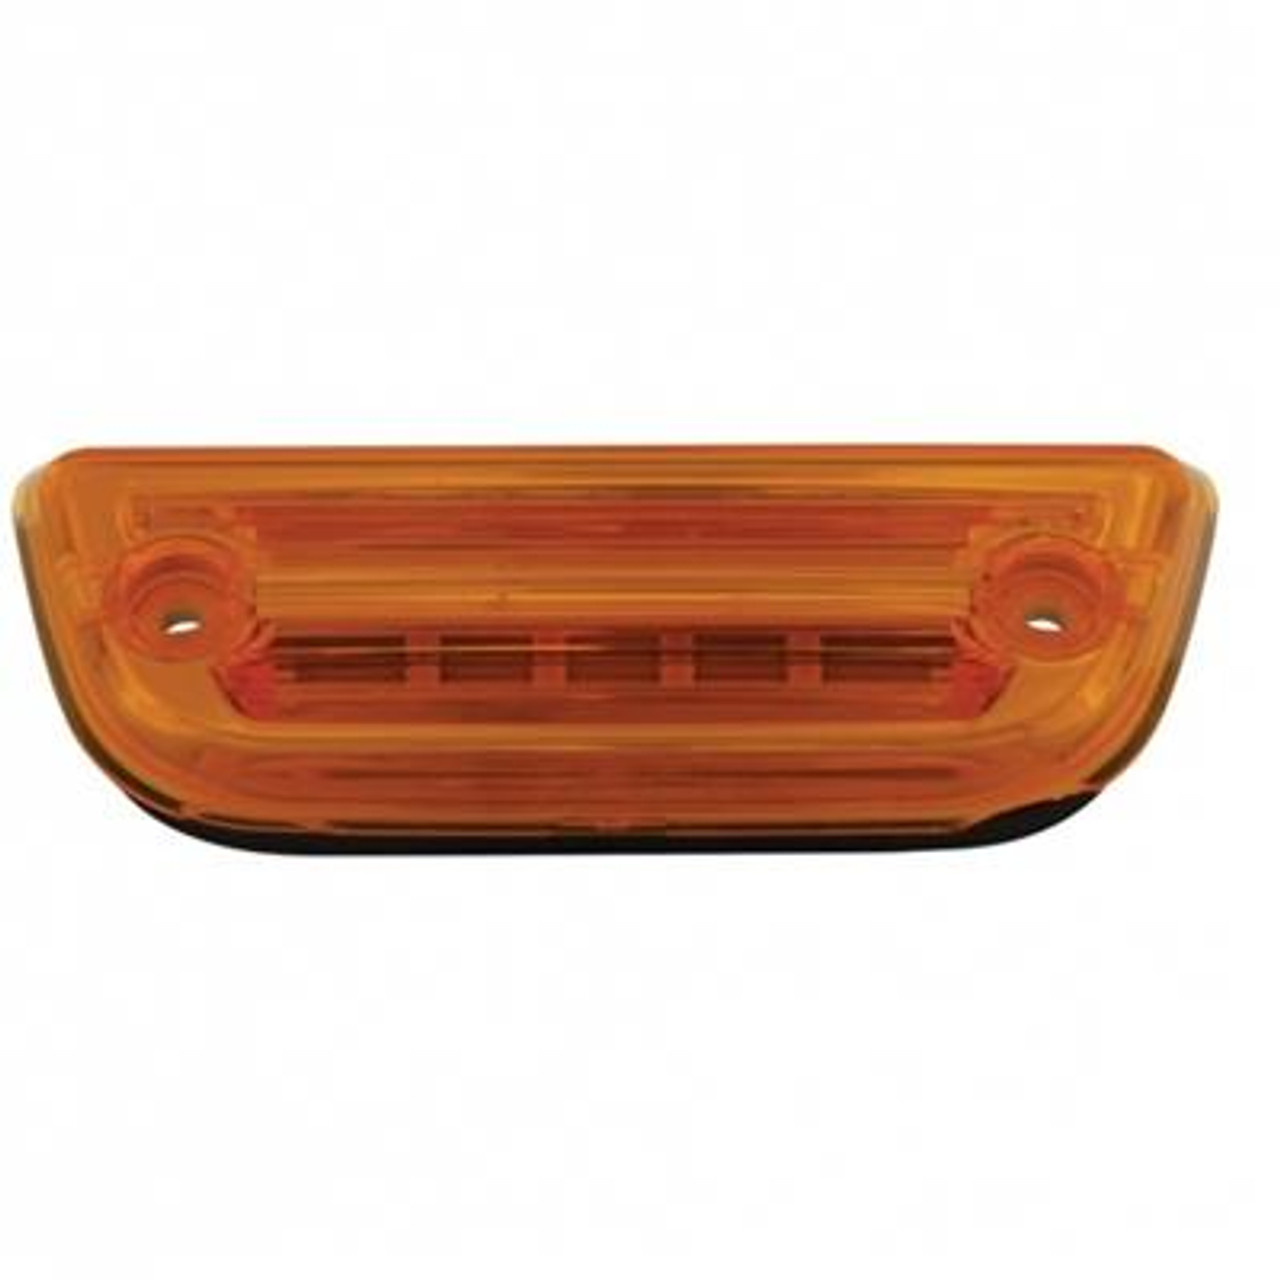 9 LED Rectangular Cab Light For Peterbilt 579 & Kenworth T680/T770/T880- Amber LED/Amber Lens